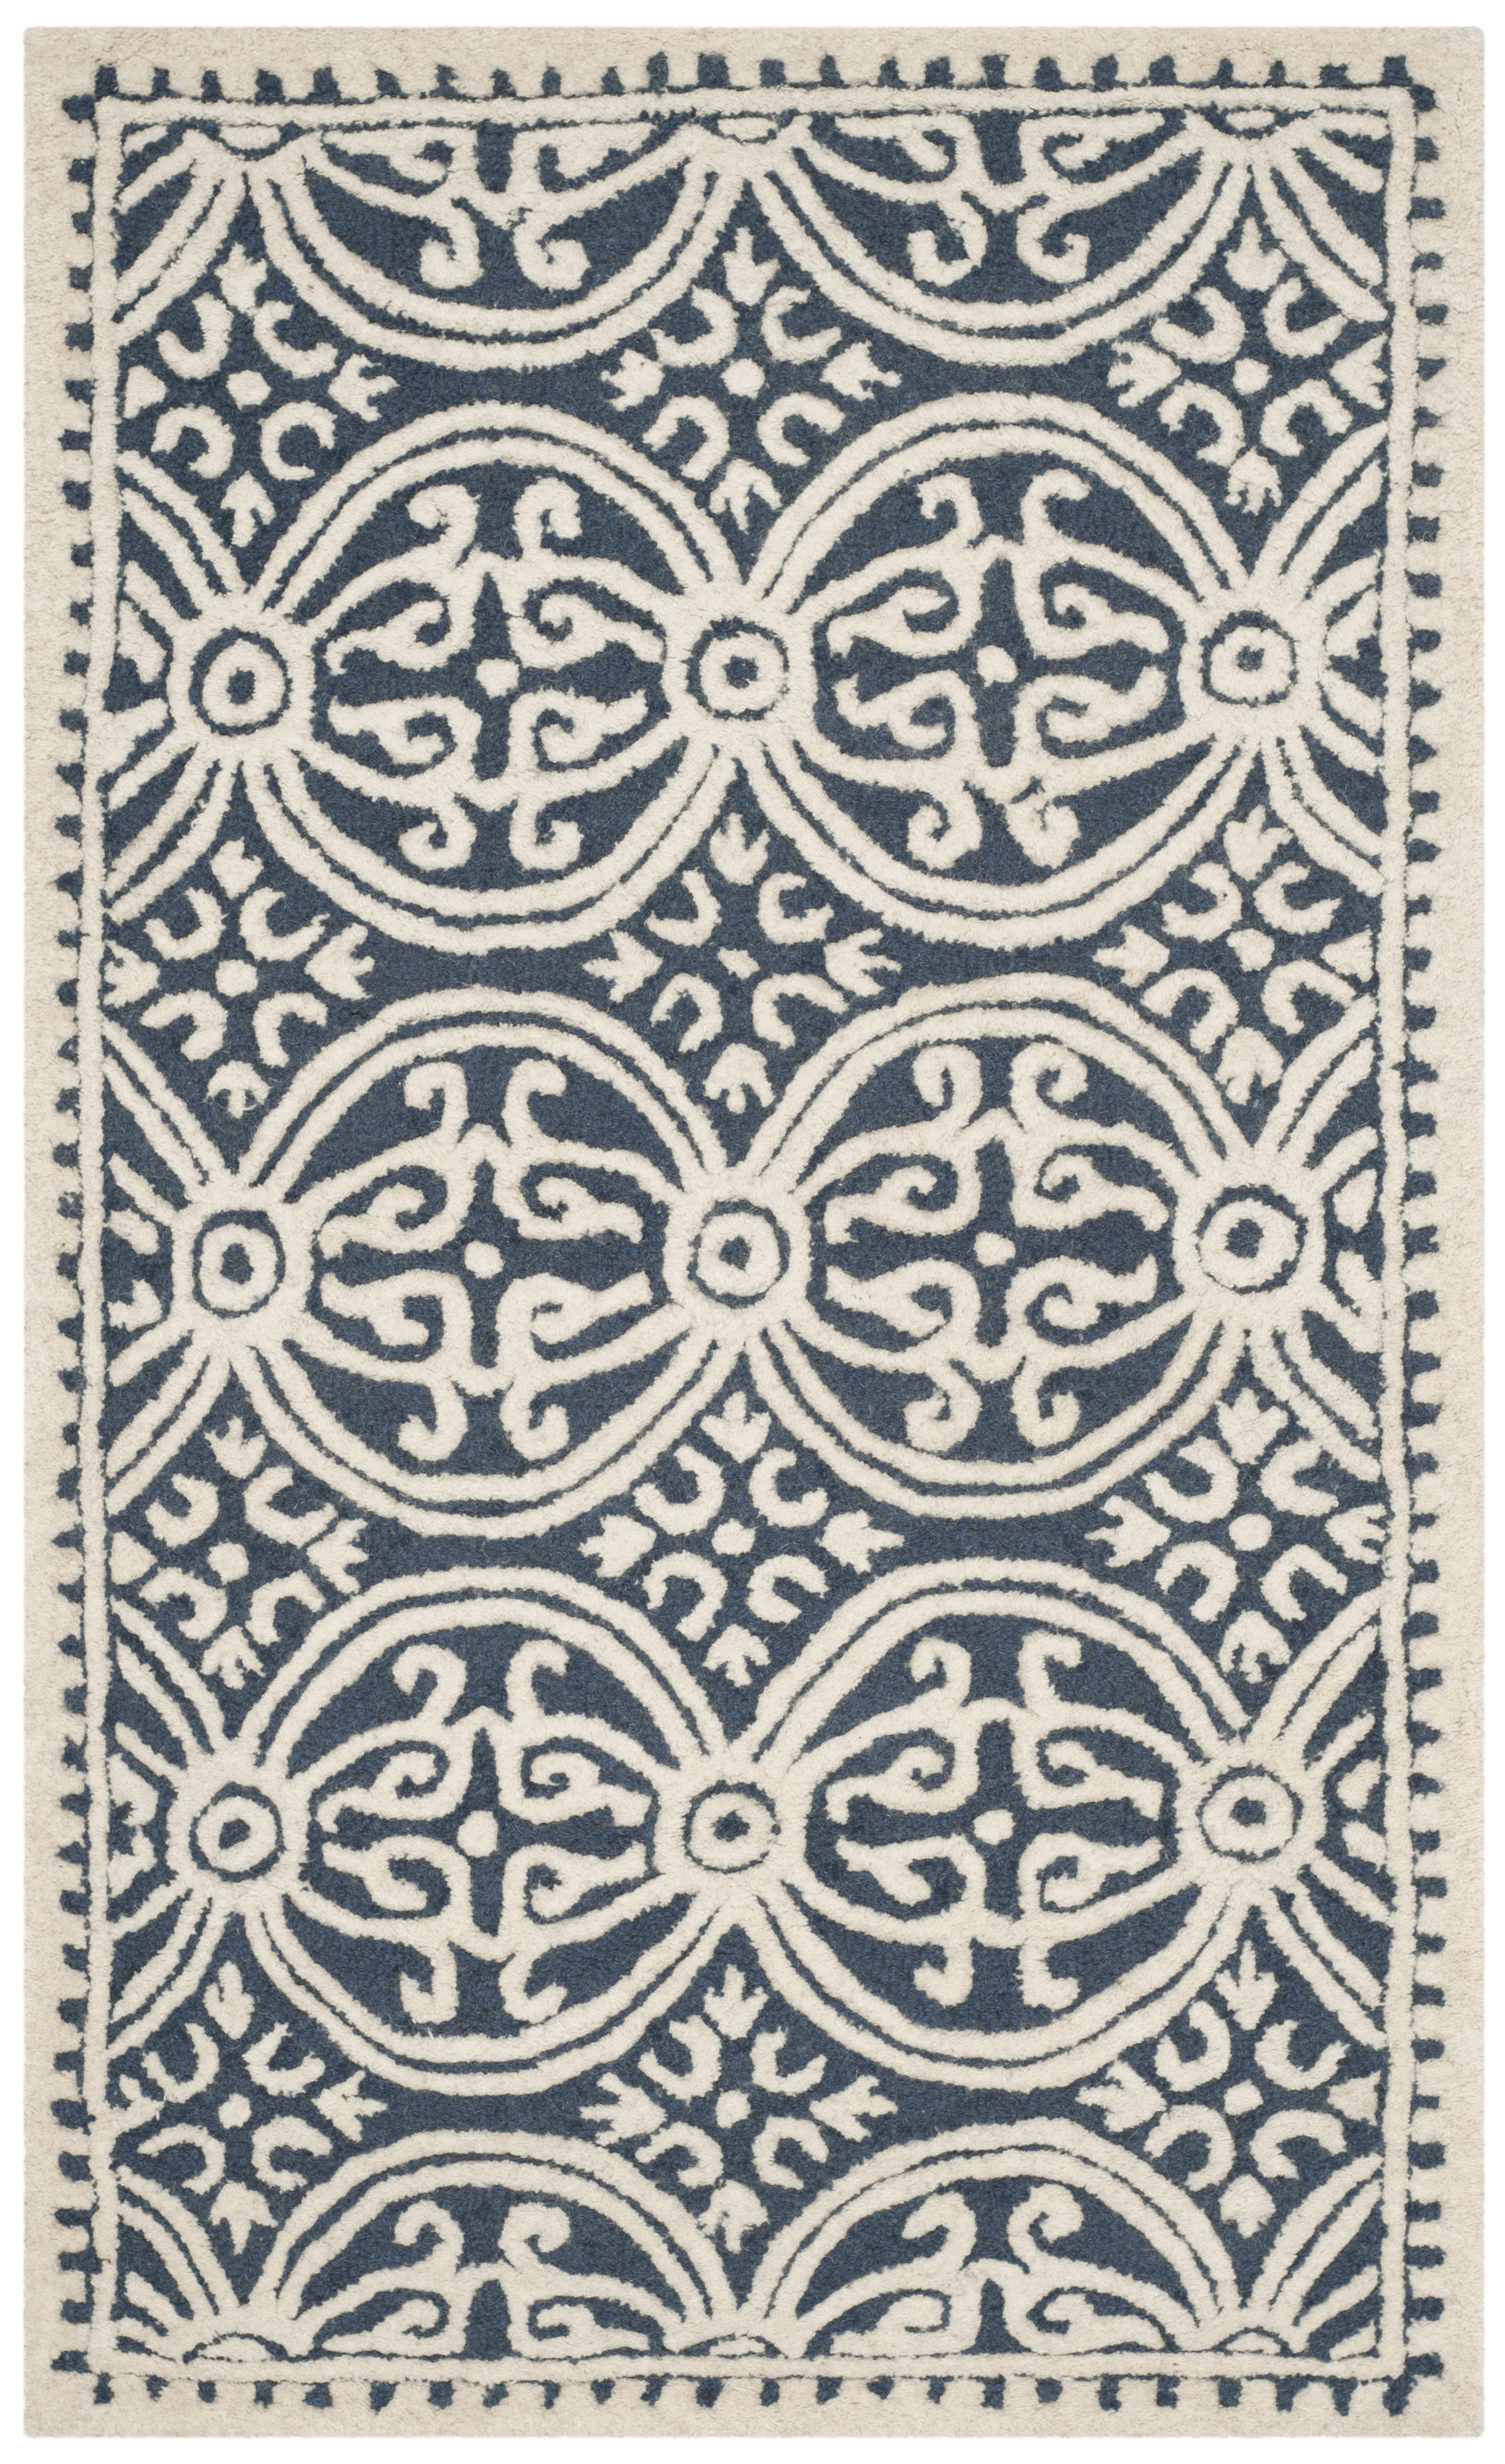 Tapis de salon interieur en bleu marine & ivoire, 91 x 152 cm